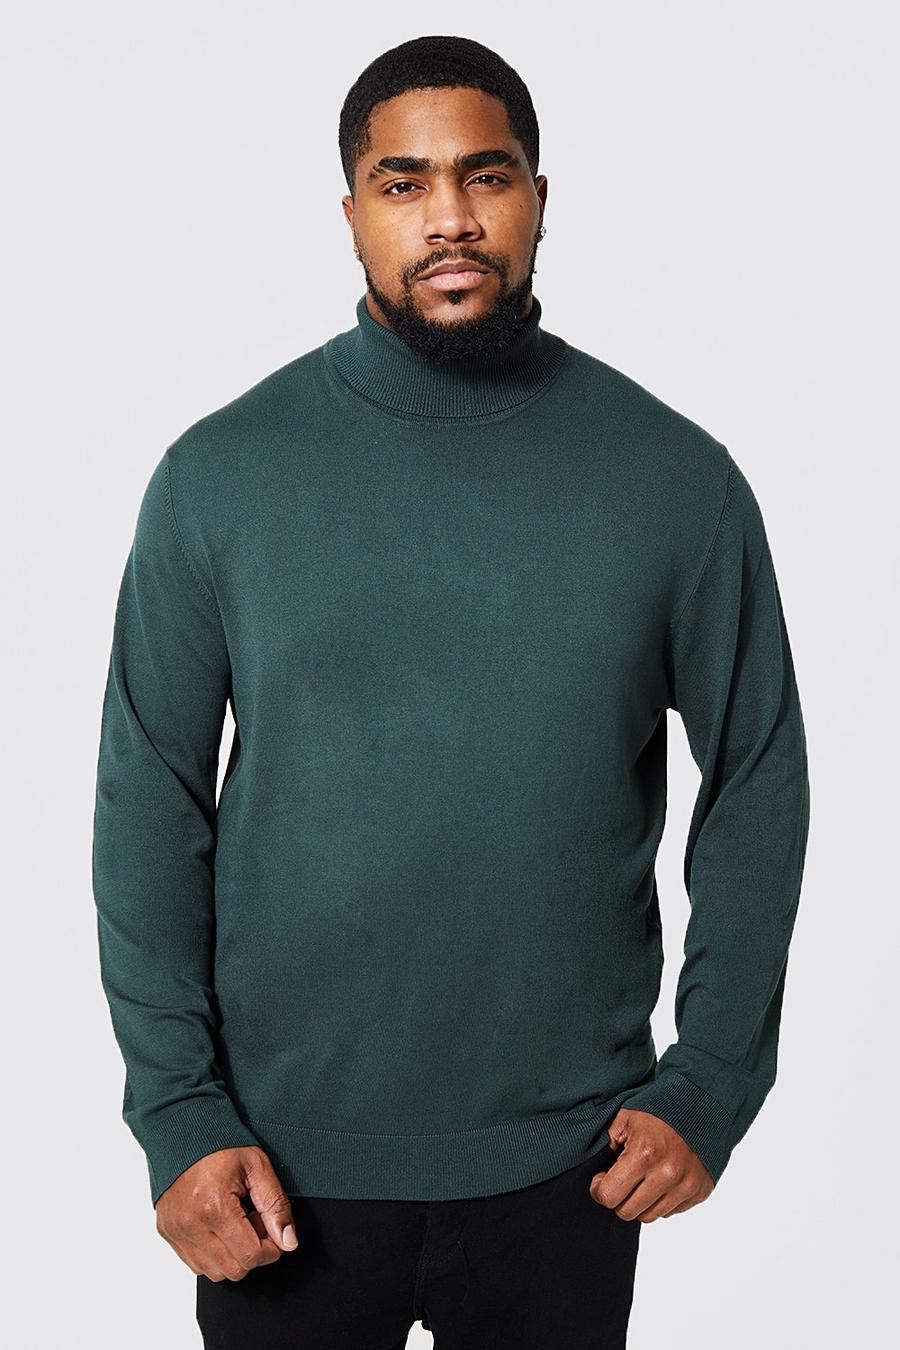 Green gerde סוודר בגזרה רגילה מחומרים ממוחזרים עם צווארון נגלל למידות גדולות